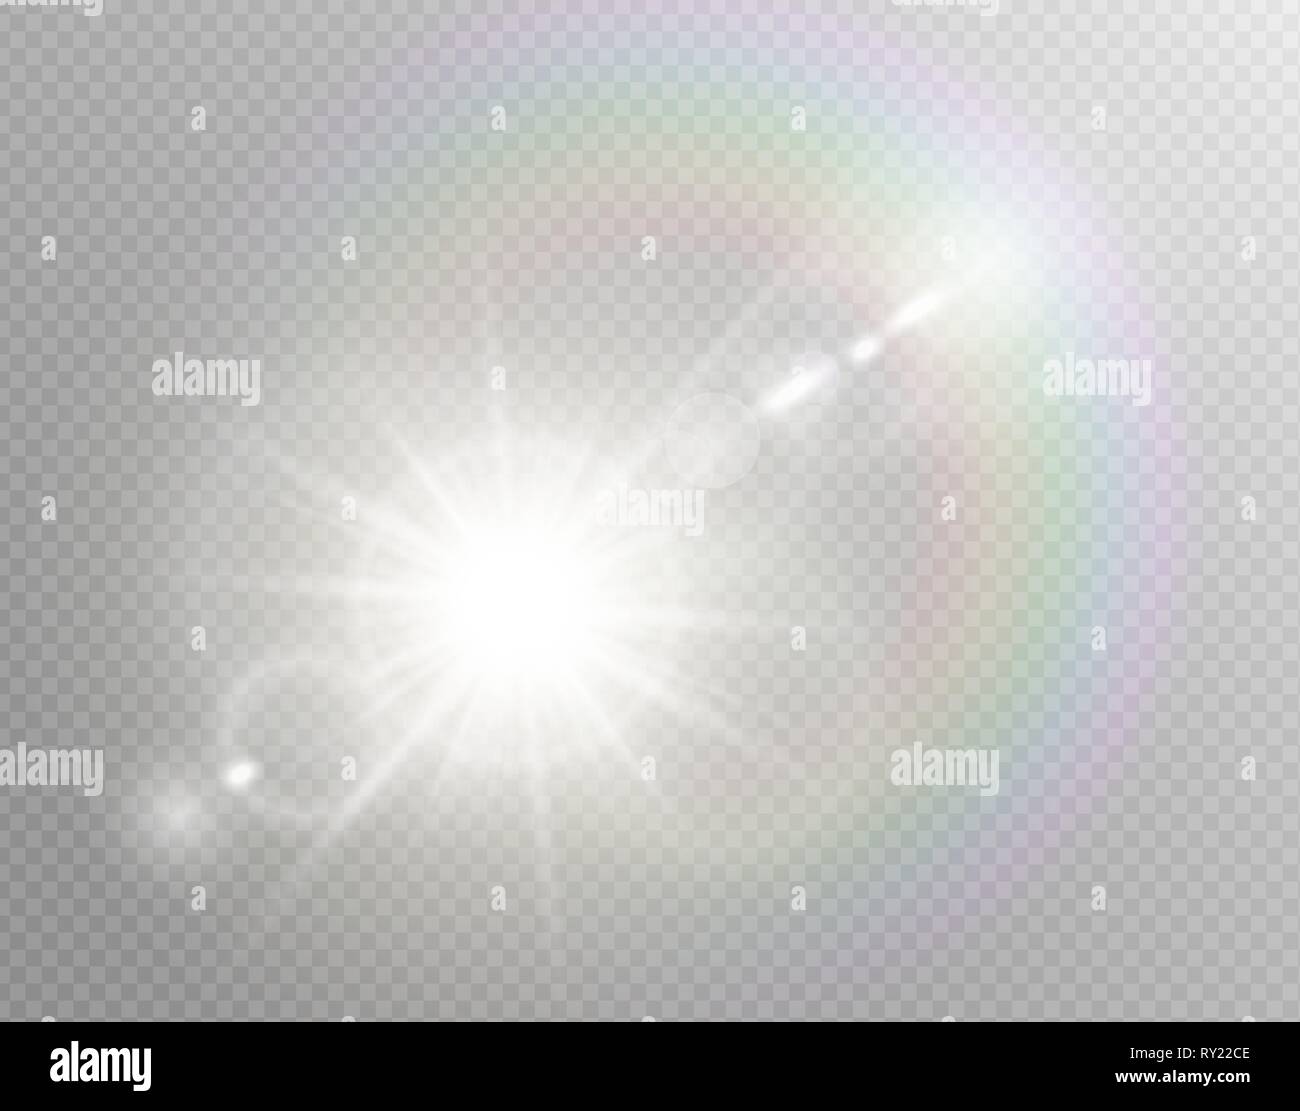 Vektor transparente Sonnenlicht besondere lens flare Lichteffekt. Isolierte Sun Flash strahlen Scheinwerfer. Weiße Front durchscheinenden Sonnenlicht Hintergrund. Blur Stock Vektor